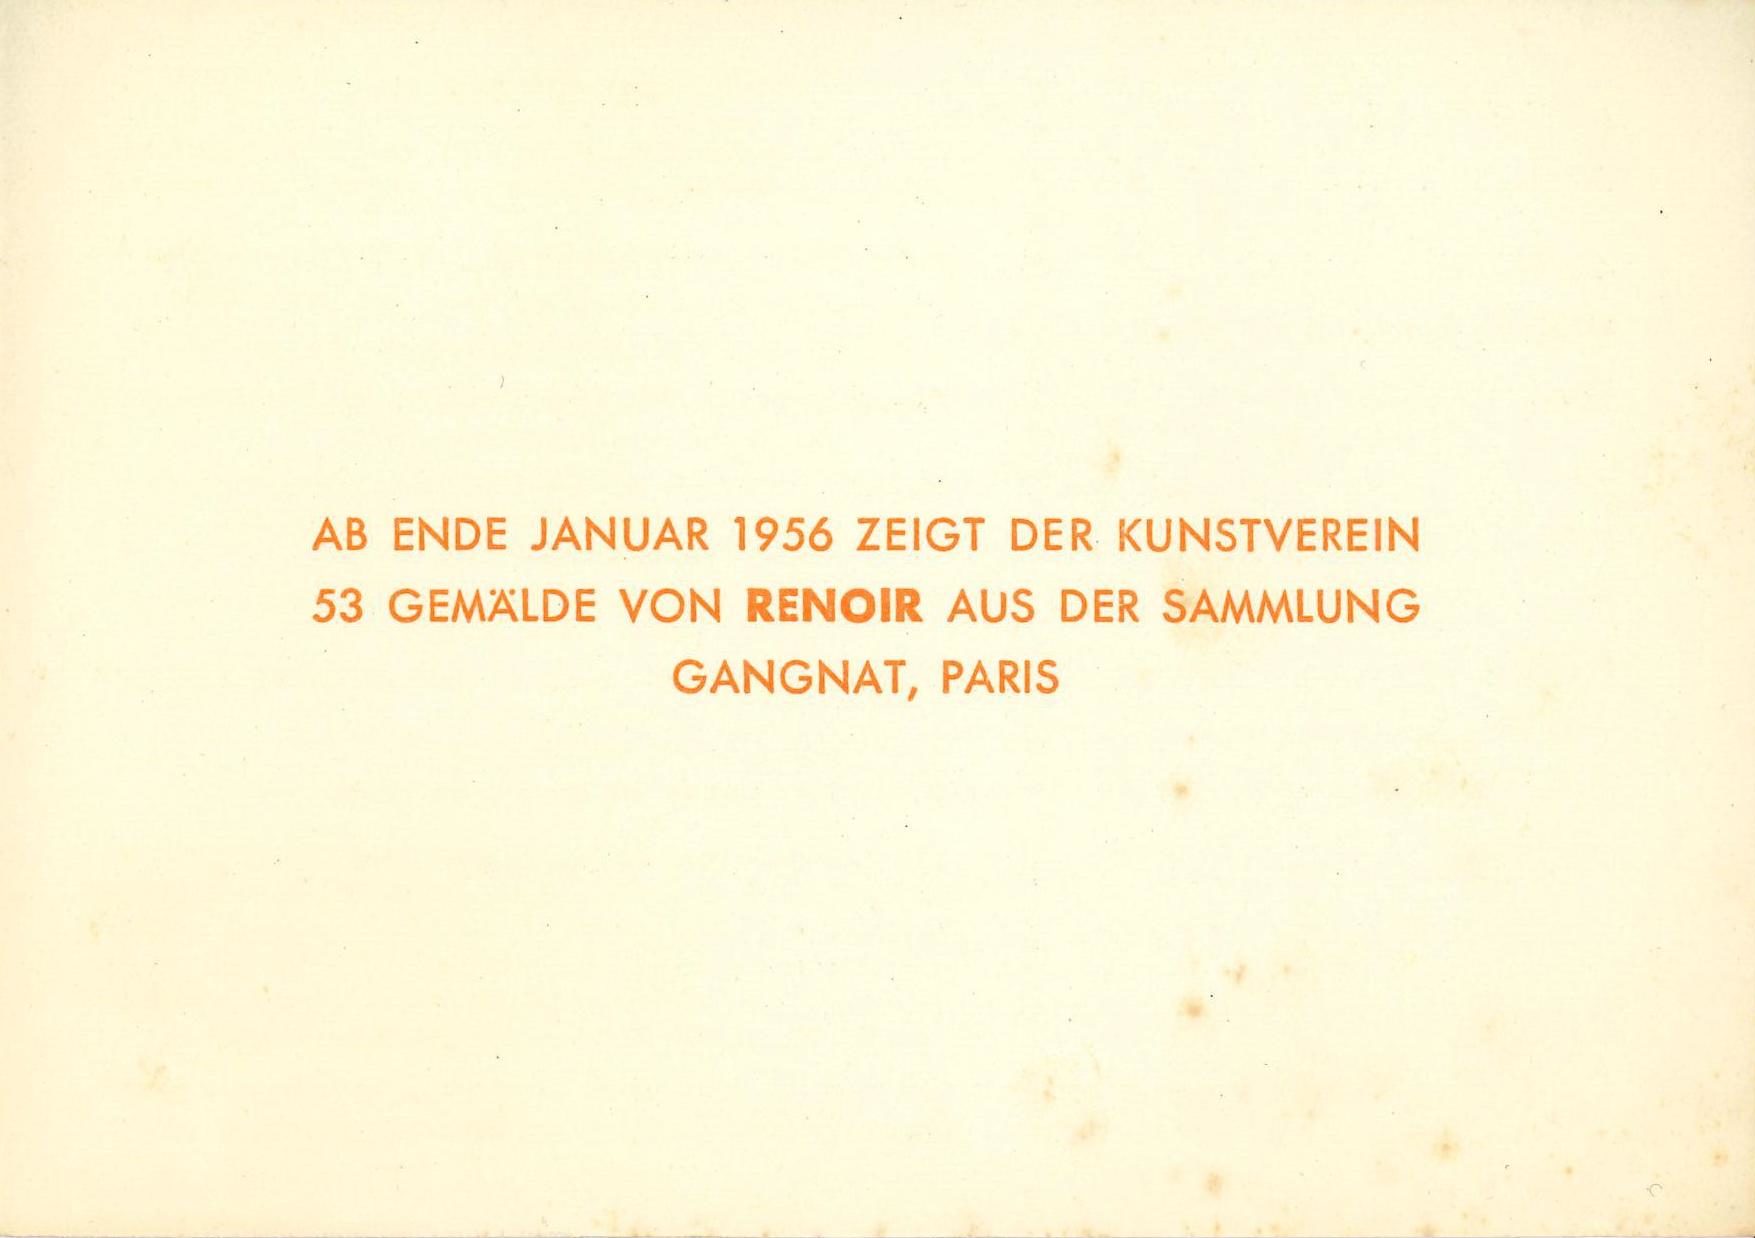 Gruppe 53, Kunstverein für die Rheinlande und Westfalen, Düsseldorf, 1956; Archiv der Avantgarden, Staatliche Kunstsammlungen Dresden